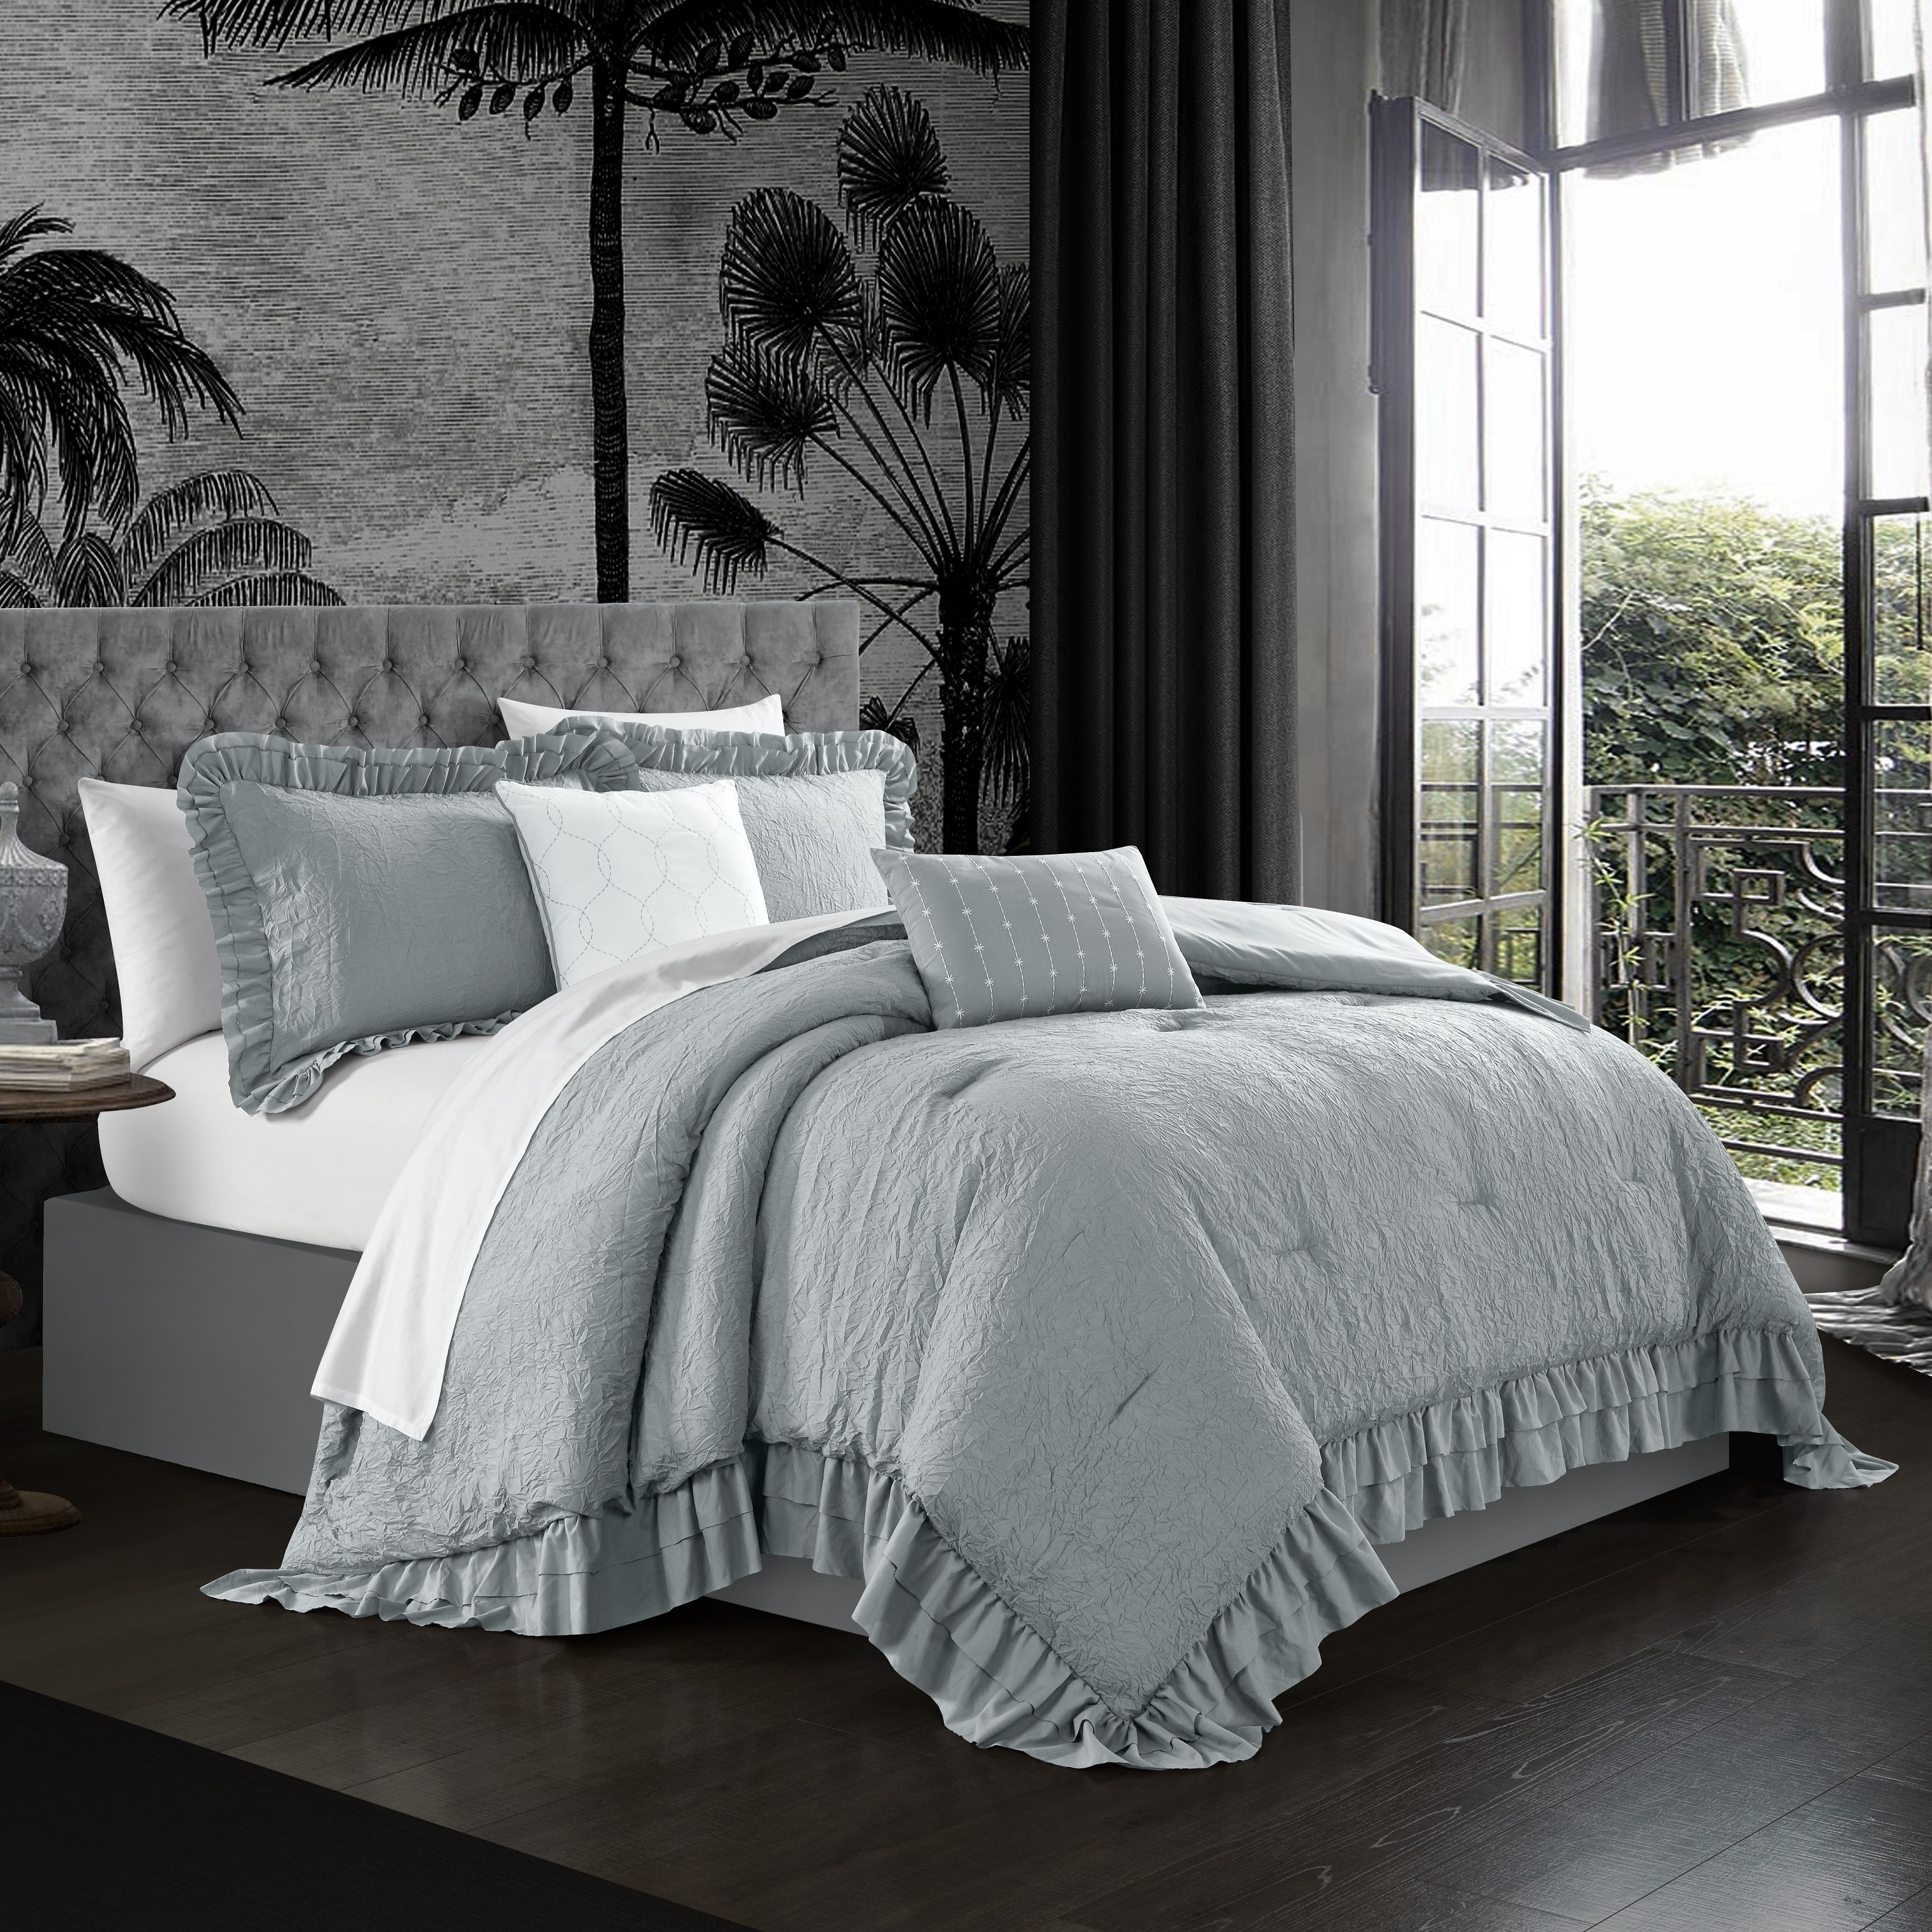 5 Piece Kensley Comforter Set Washed Crinkle Ruffled Flange Border Design Bedding - Lavender, King